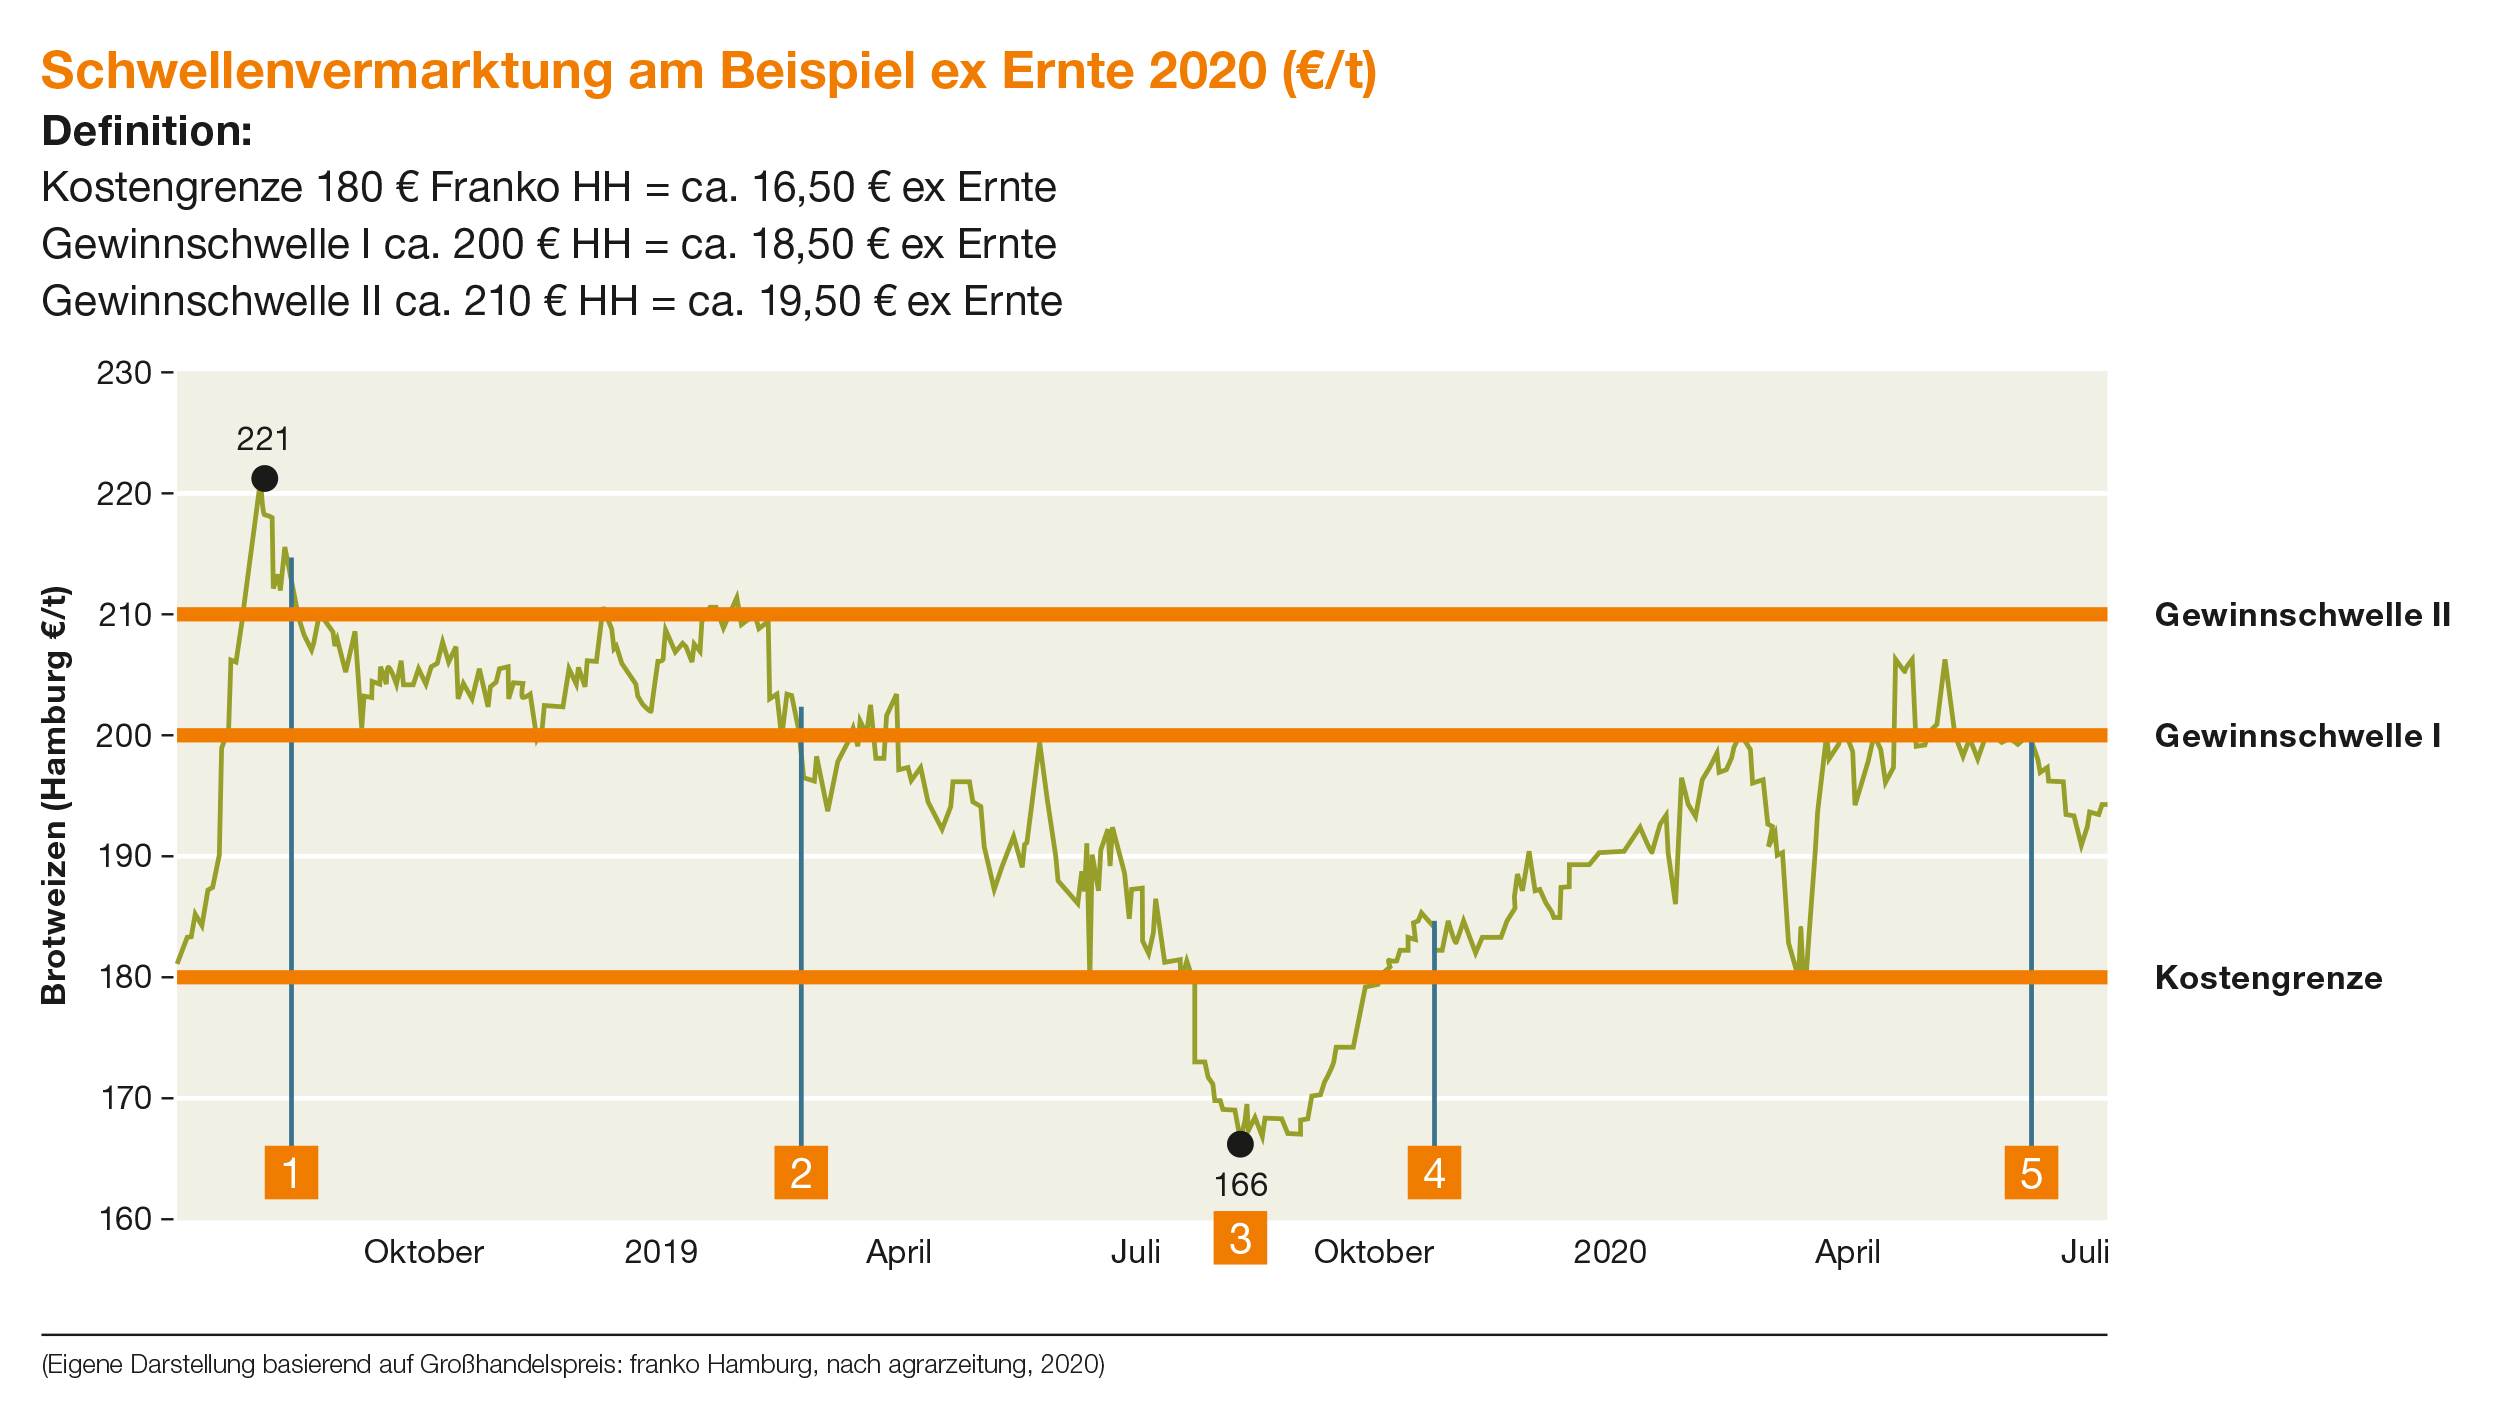 Schwellenvermarktung am Beispiel ex Ernte 2020 (€/t)